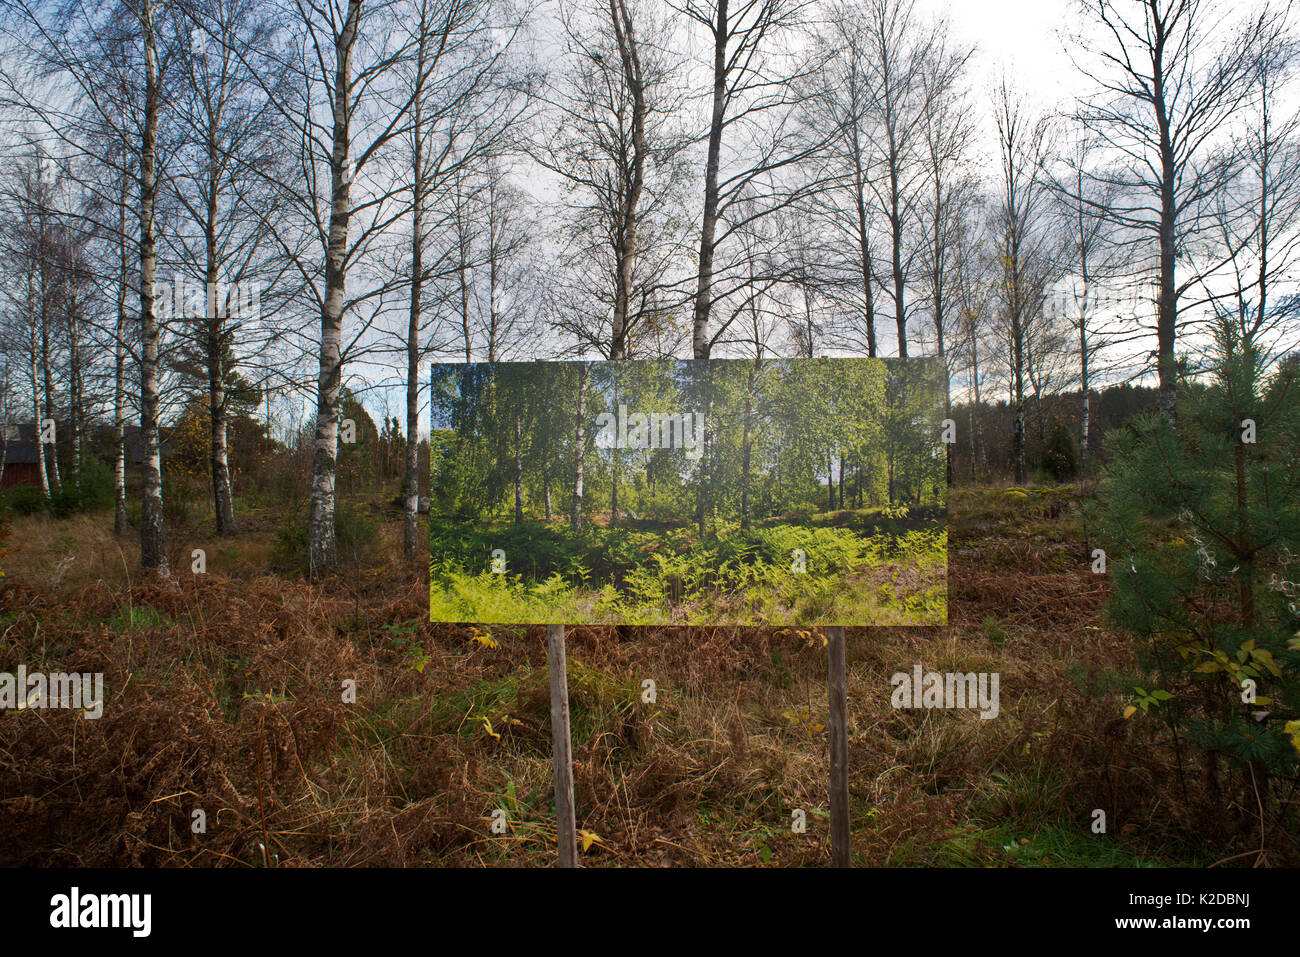 Changement des saisons, l'été l'image / photographie de paysage d'automne, "Le passage du temps" par l'artiste Pal Hermansen. Valer, Østfold, Norvège Comté. Octobre 2015. Banque D'Images